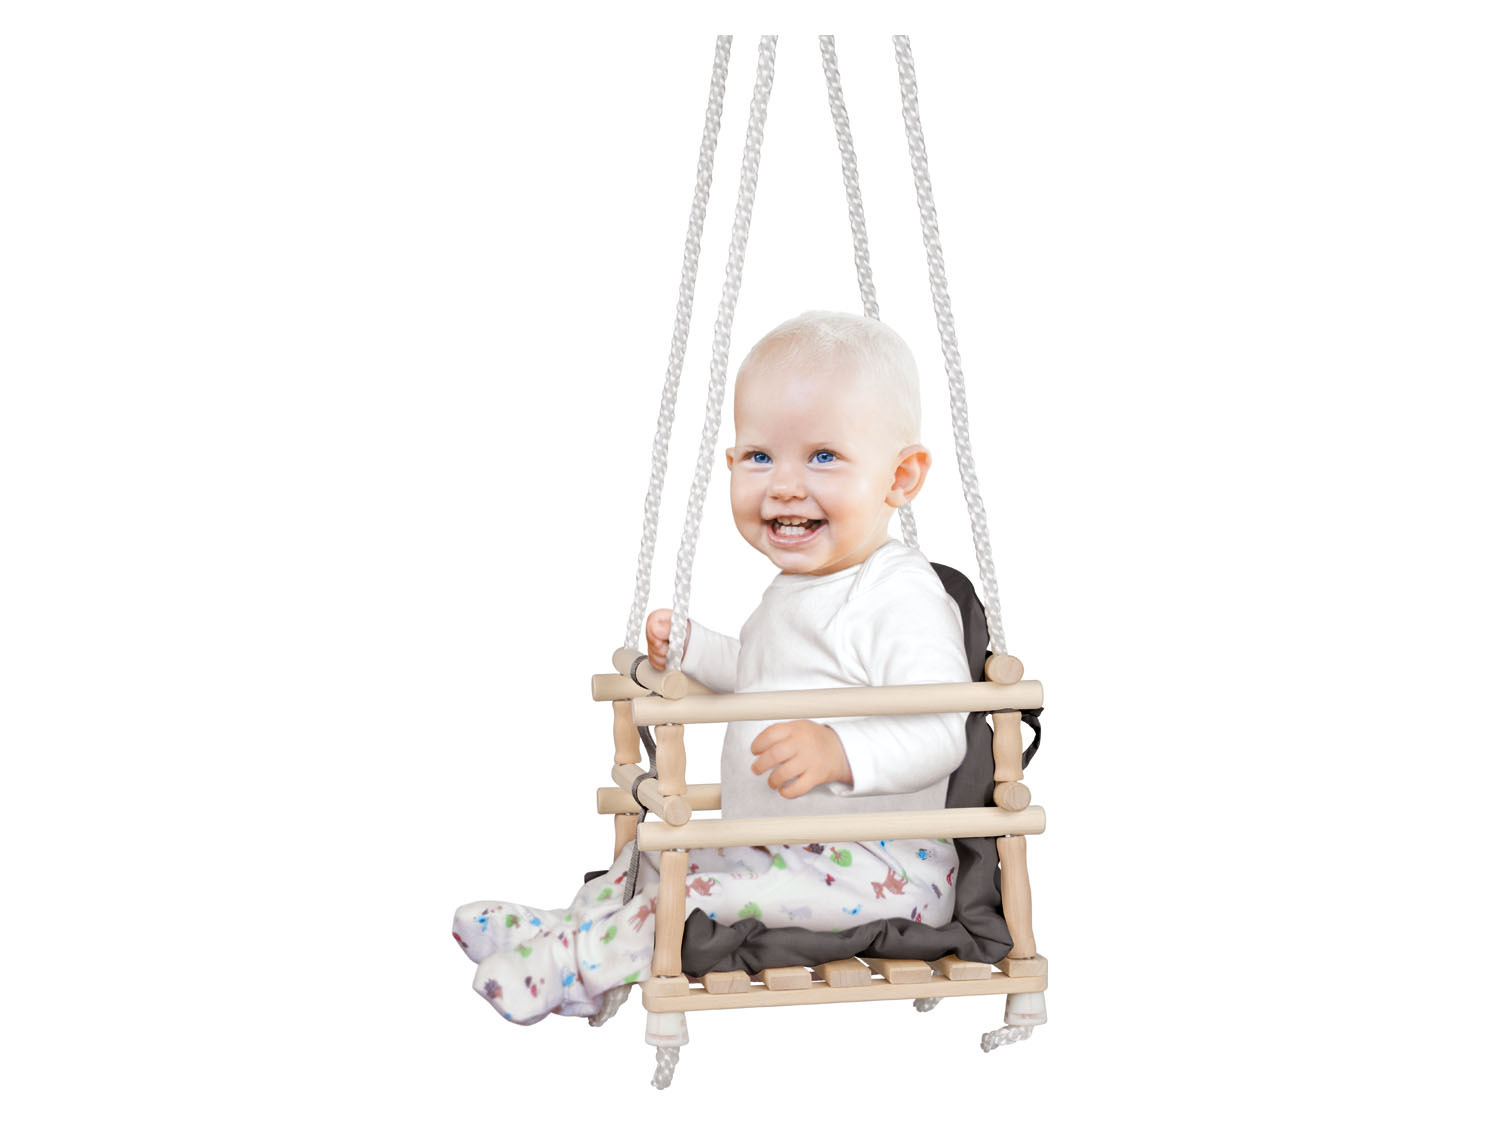 Grazen les maak een foto Playtive Houten babyschommel online kopen op Lidl.be